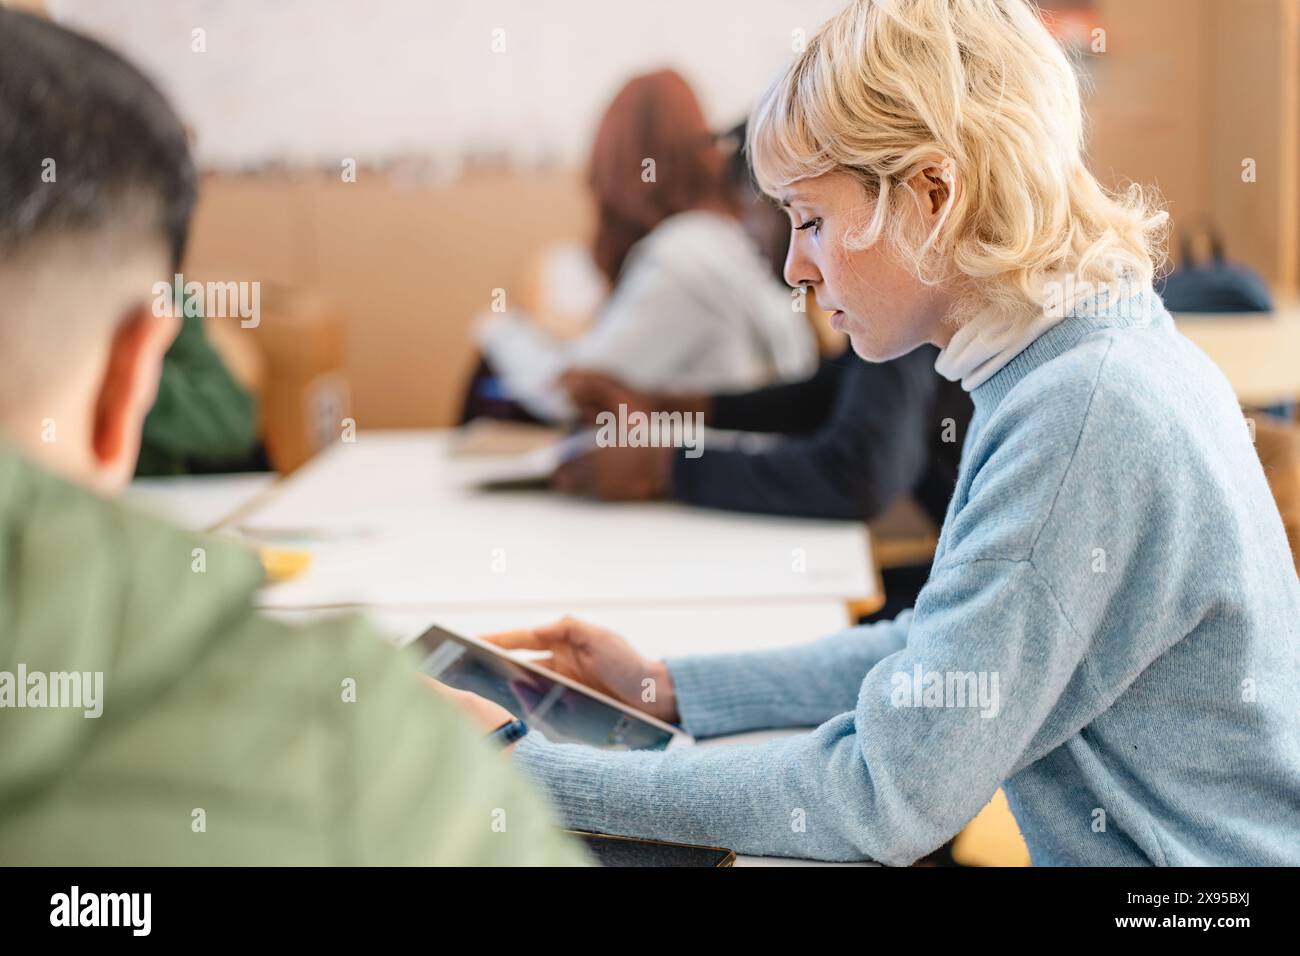 Studente universitario concentrato che studia con un tablet in classe - concentrazione, istruzione moderna e coinvolgimento accademico, con lo studente profondamente invo Foto Stock